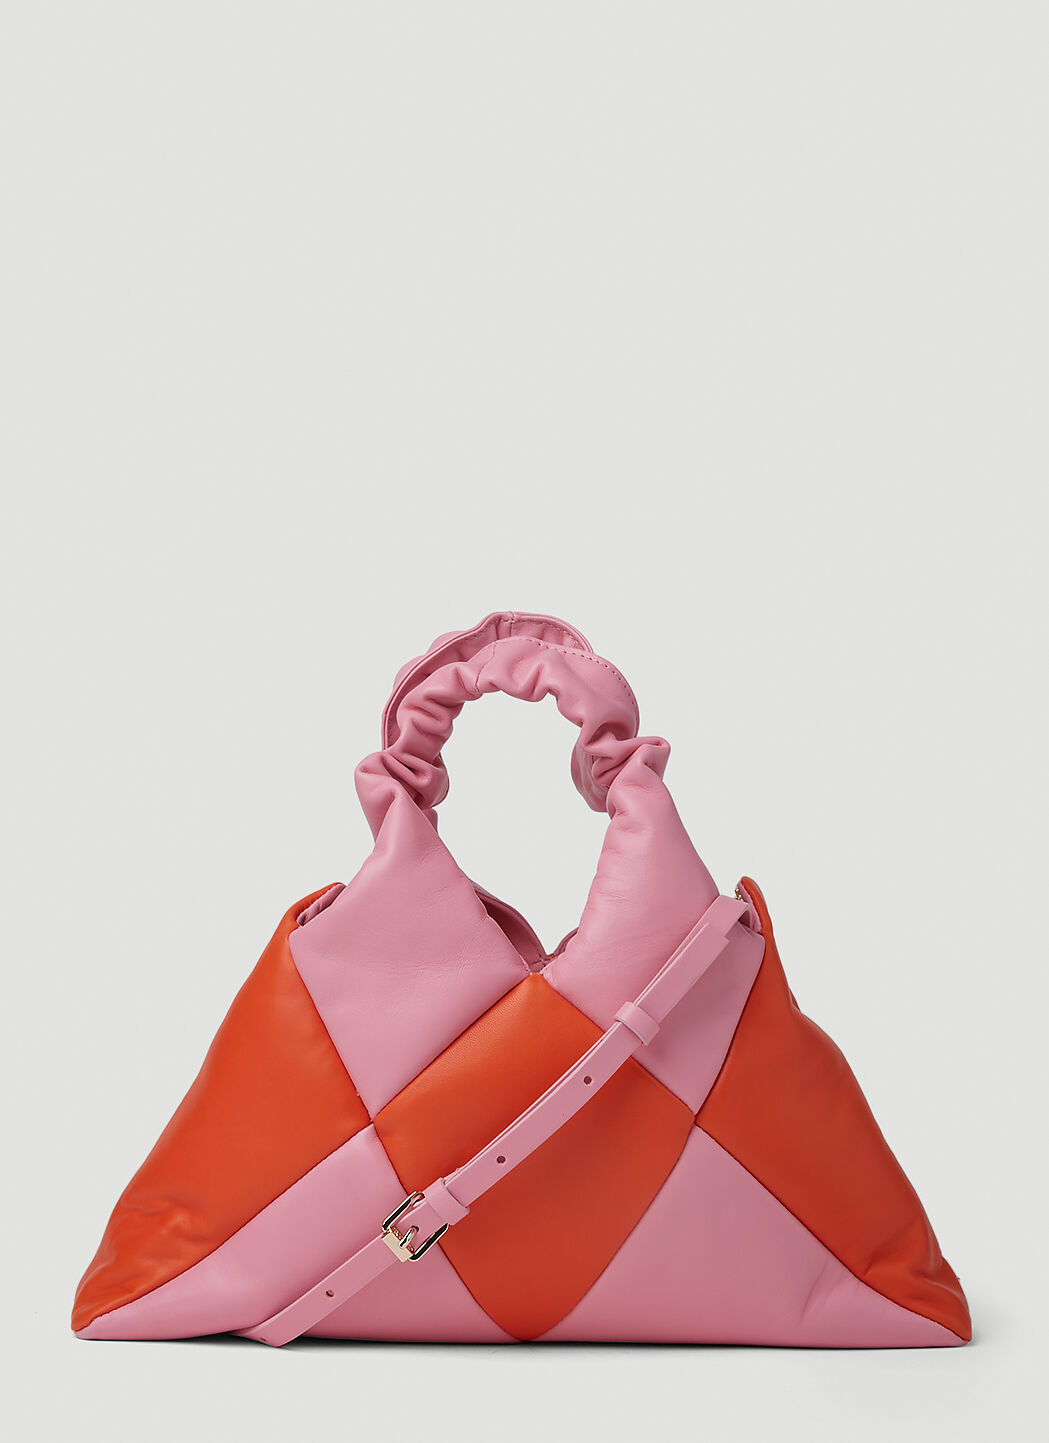 Studio Reco Didi Tarta Handbag Pink rec0251008